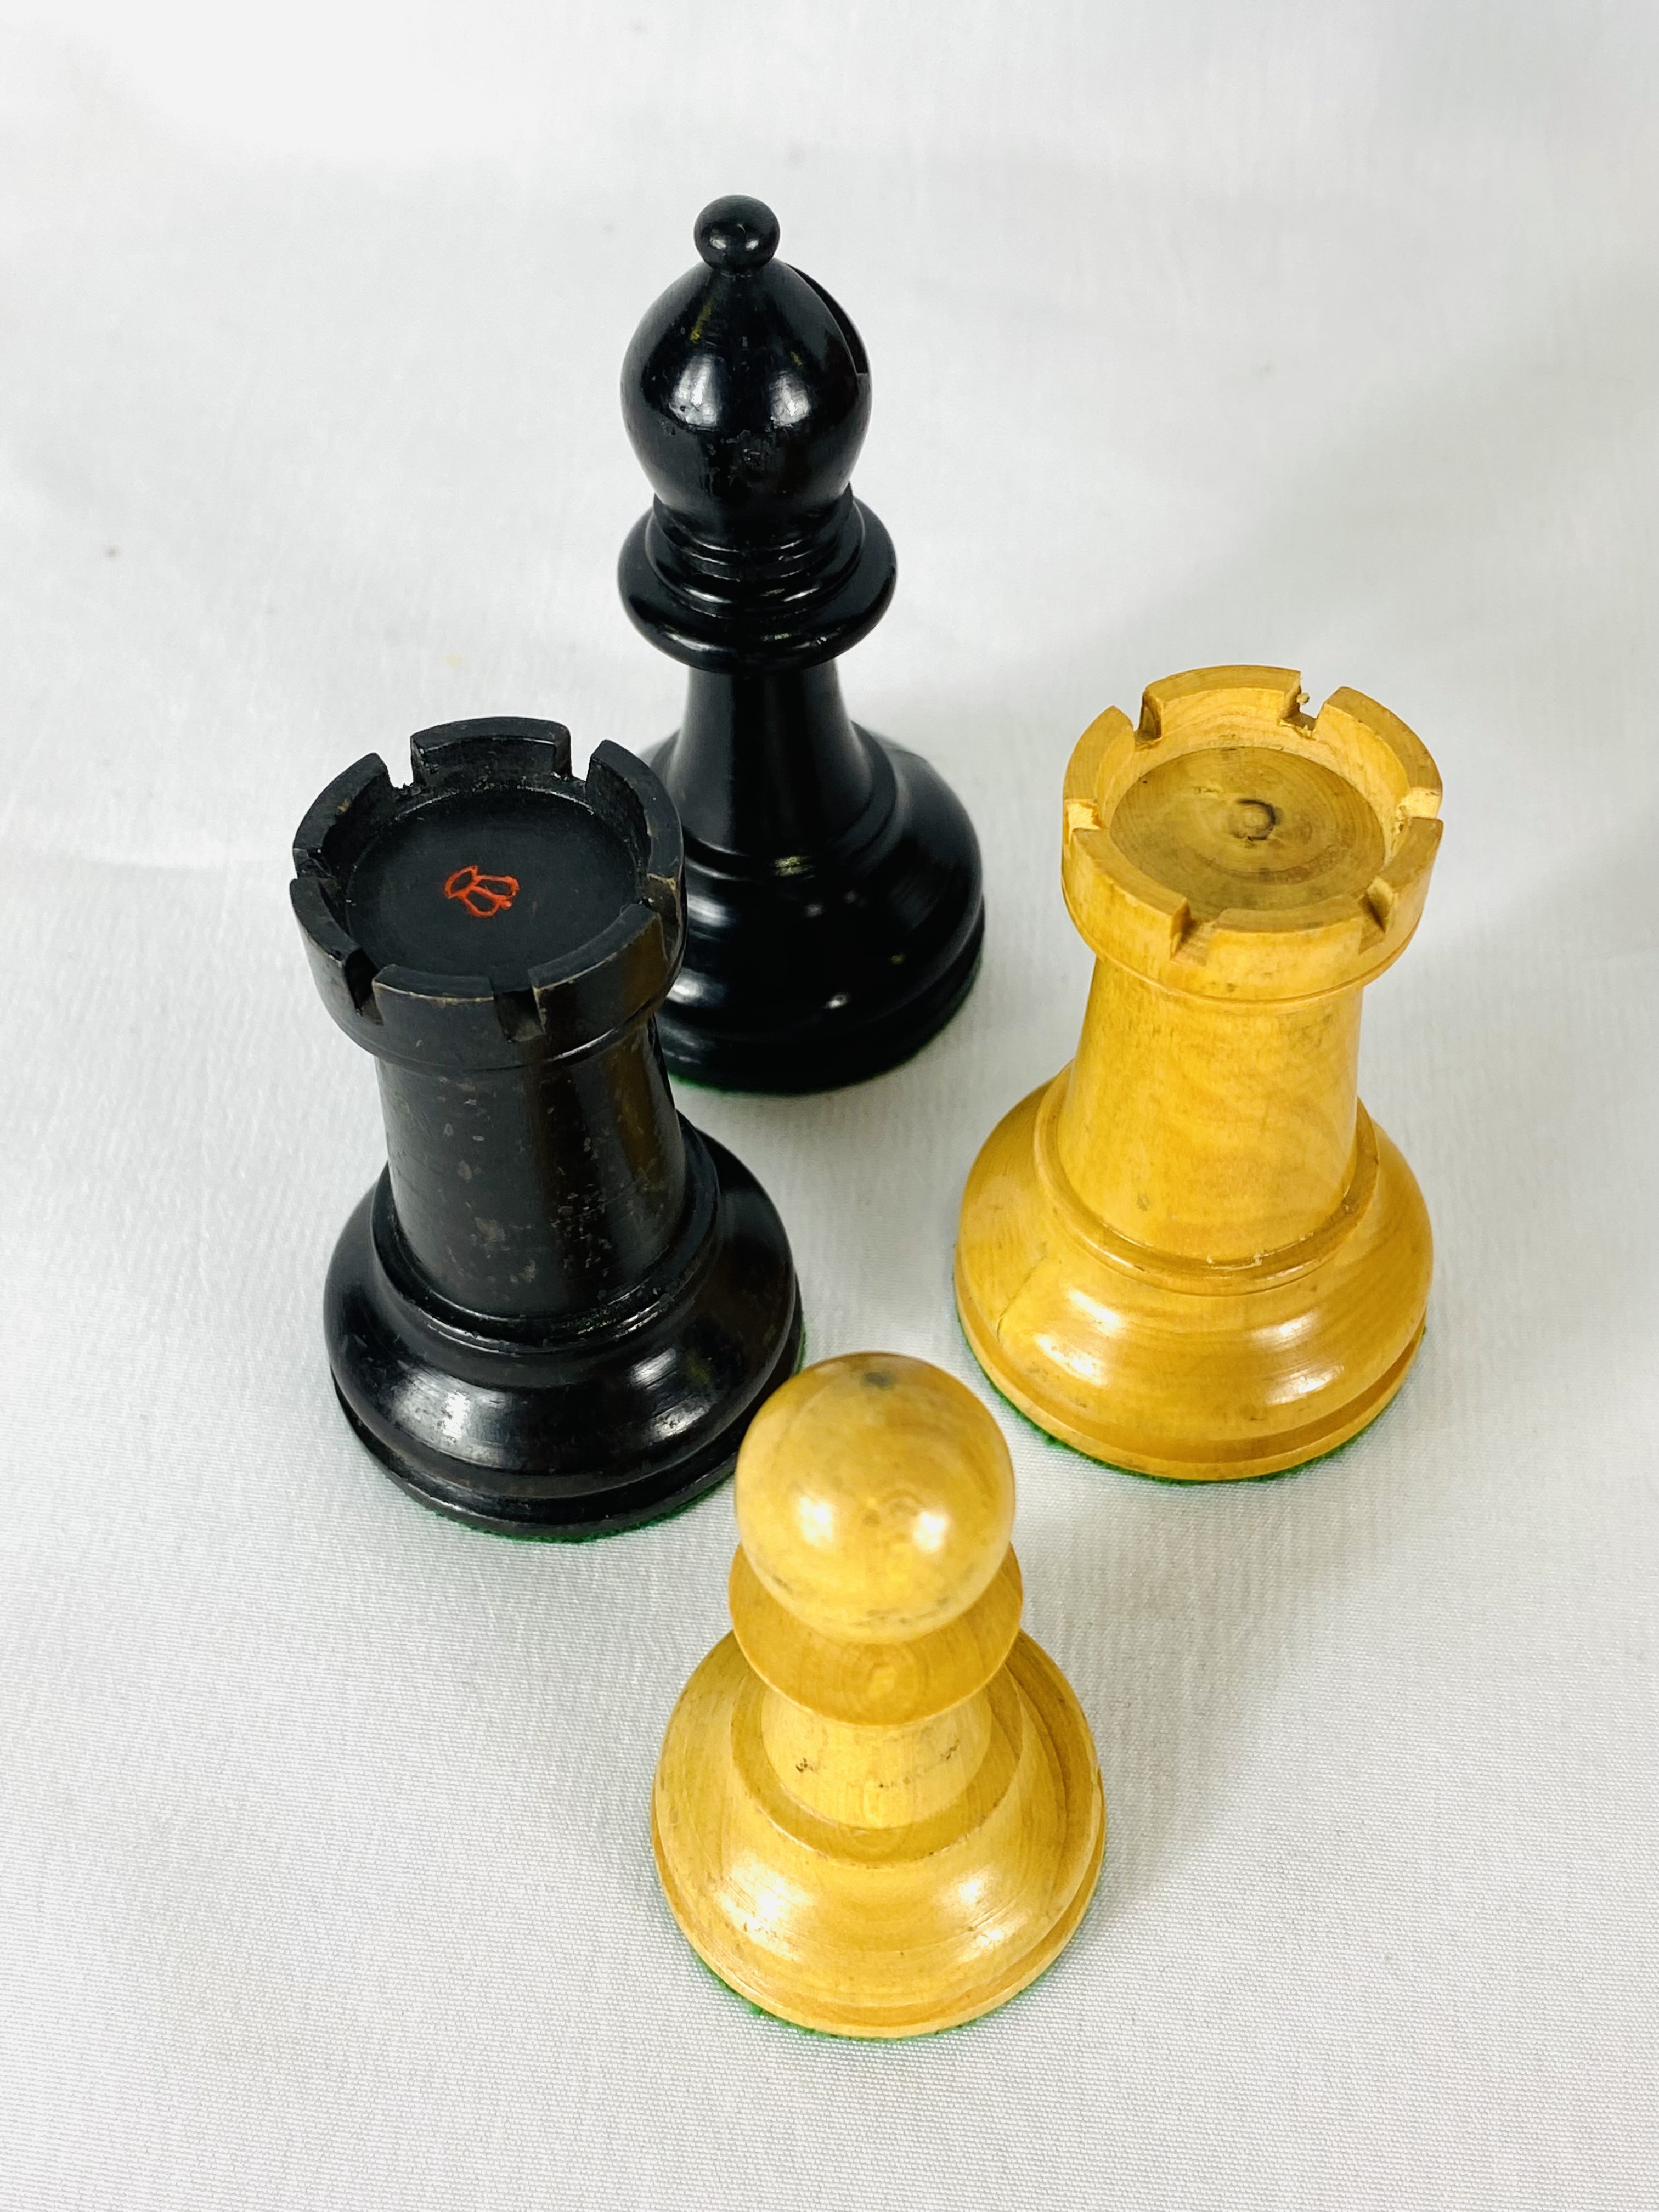 Boxwood and ebony Staunton style chess set - Image 4 of 6